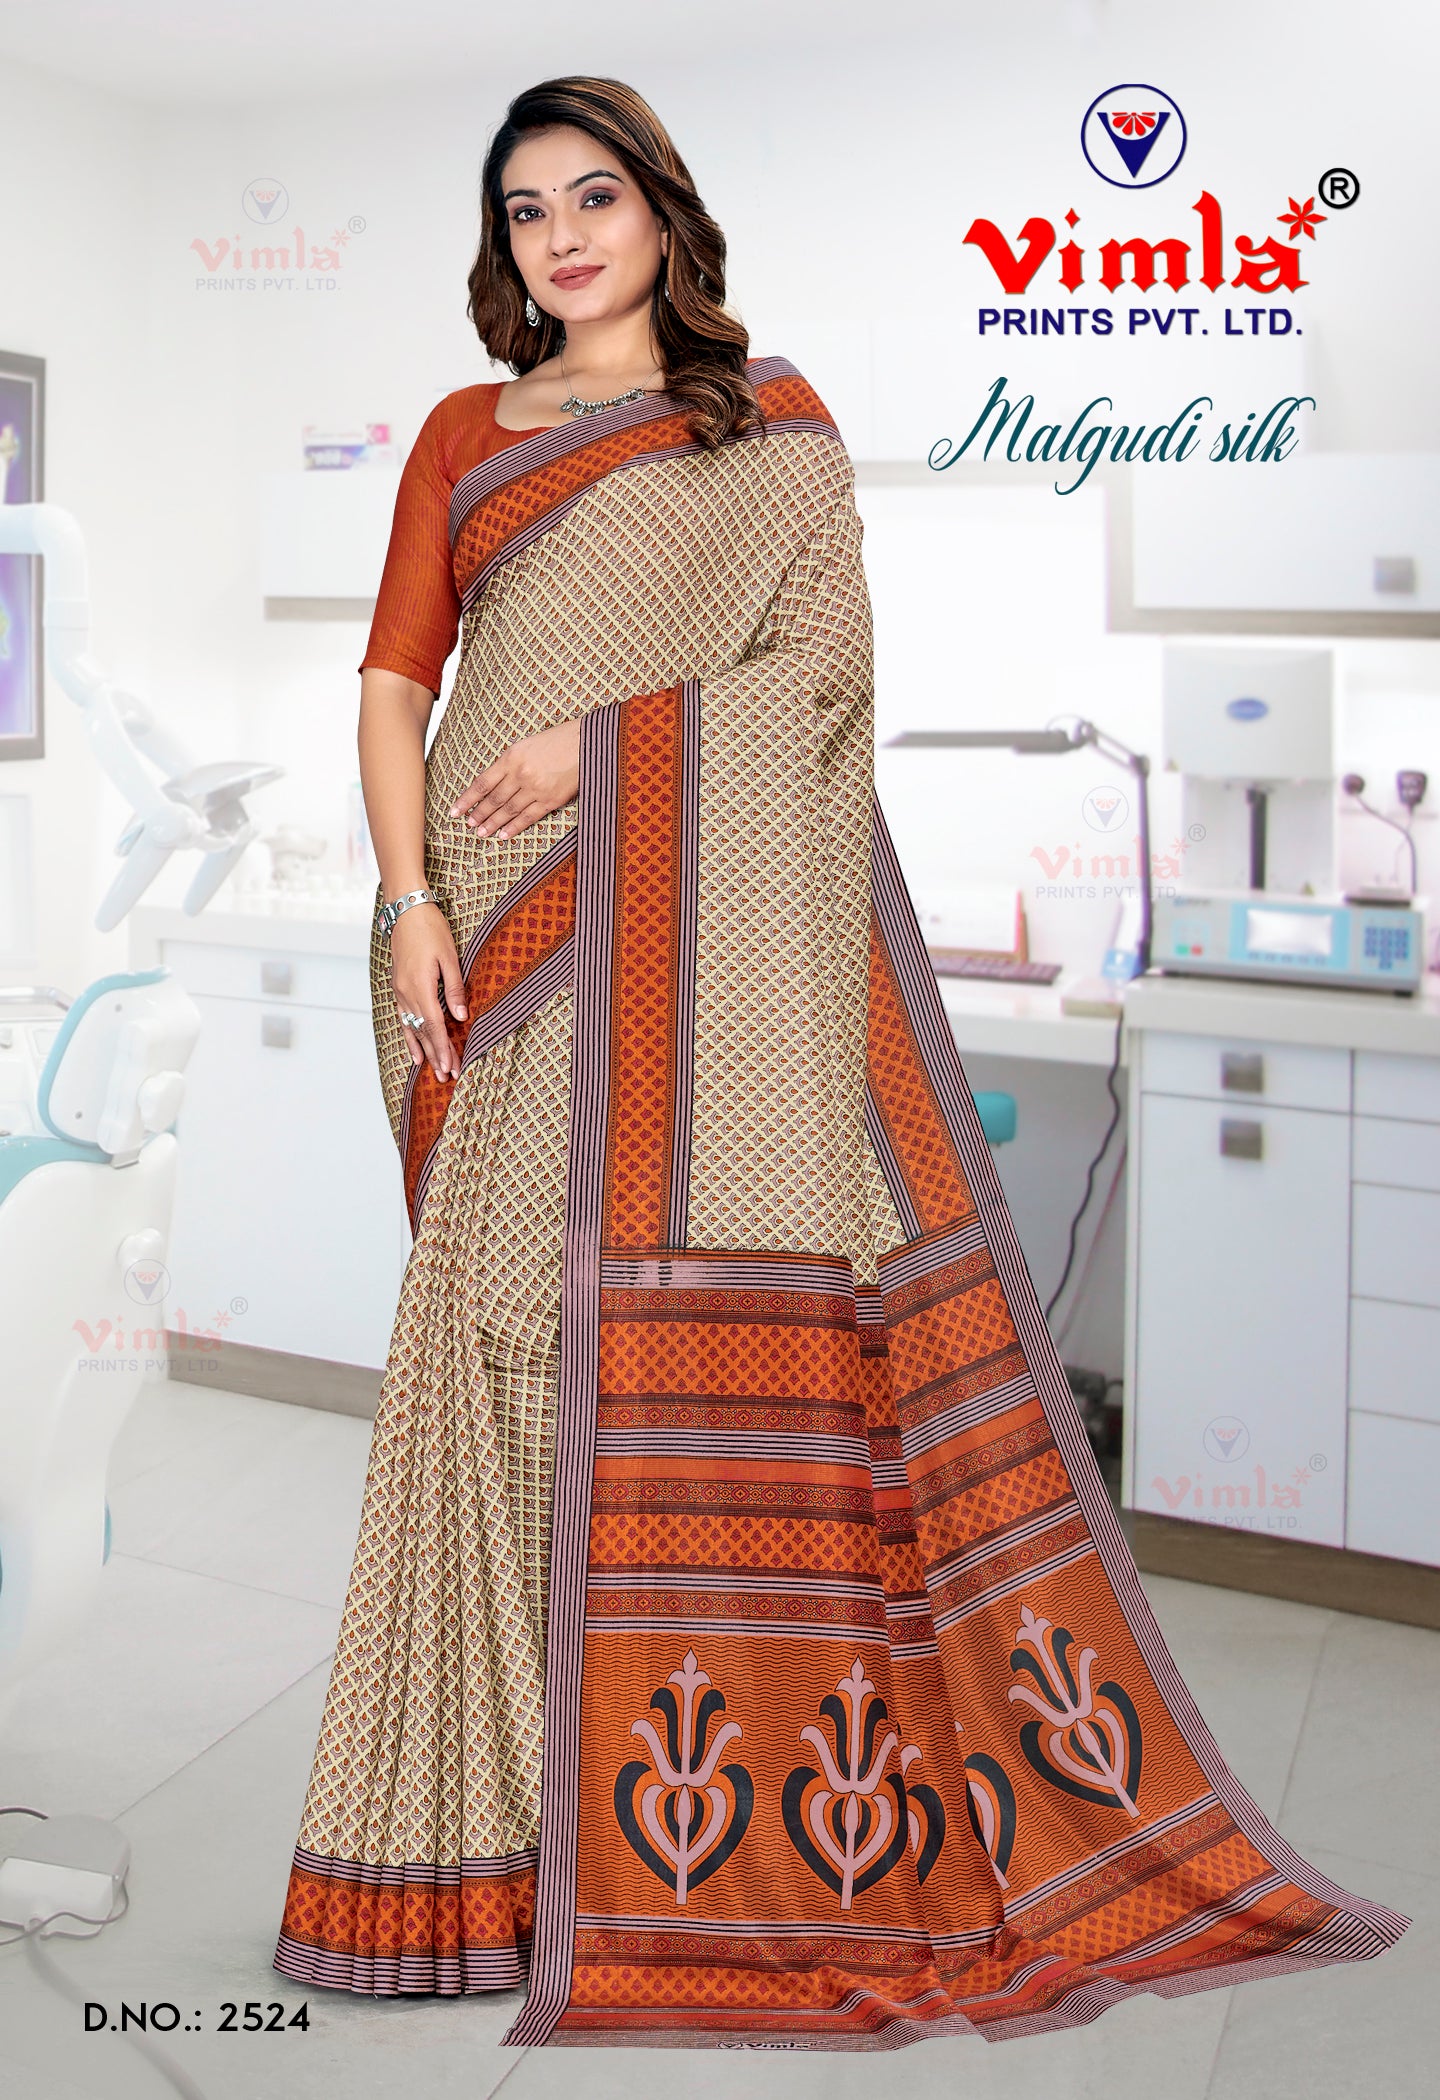 Vimla Women's Multicolor Malgudi Art Silk Uniform Saree with Blouse Piece (2524_25)